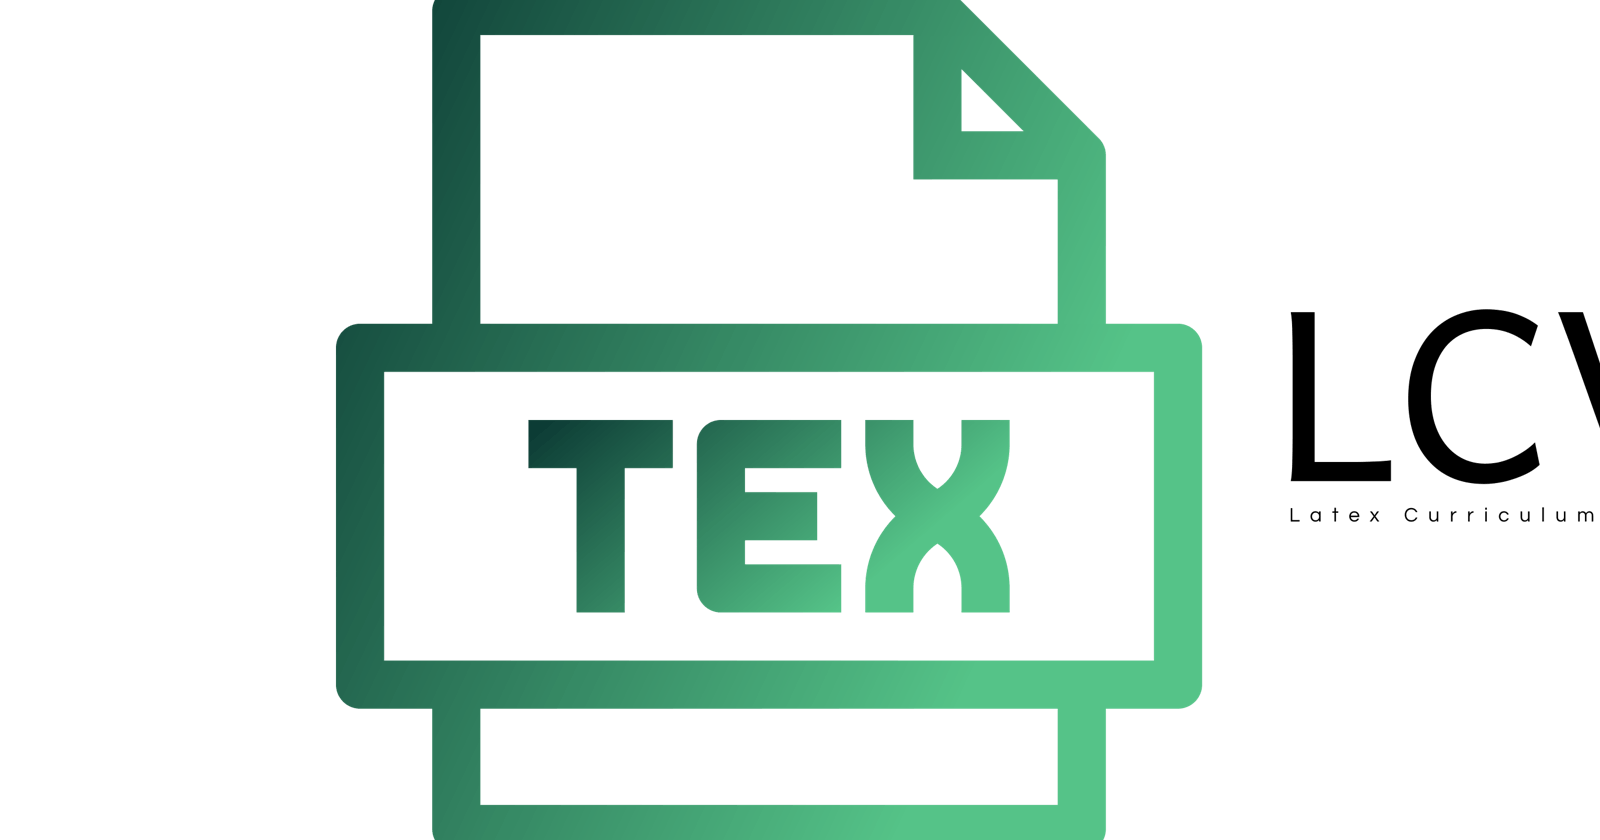 Latex Curriculum Vitae 0.9.0-beta1 released!